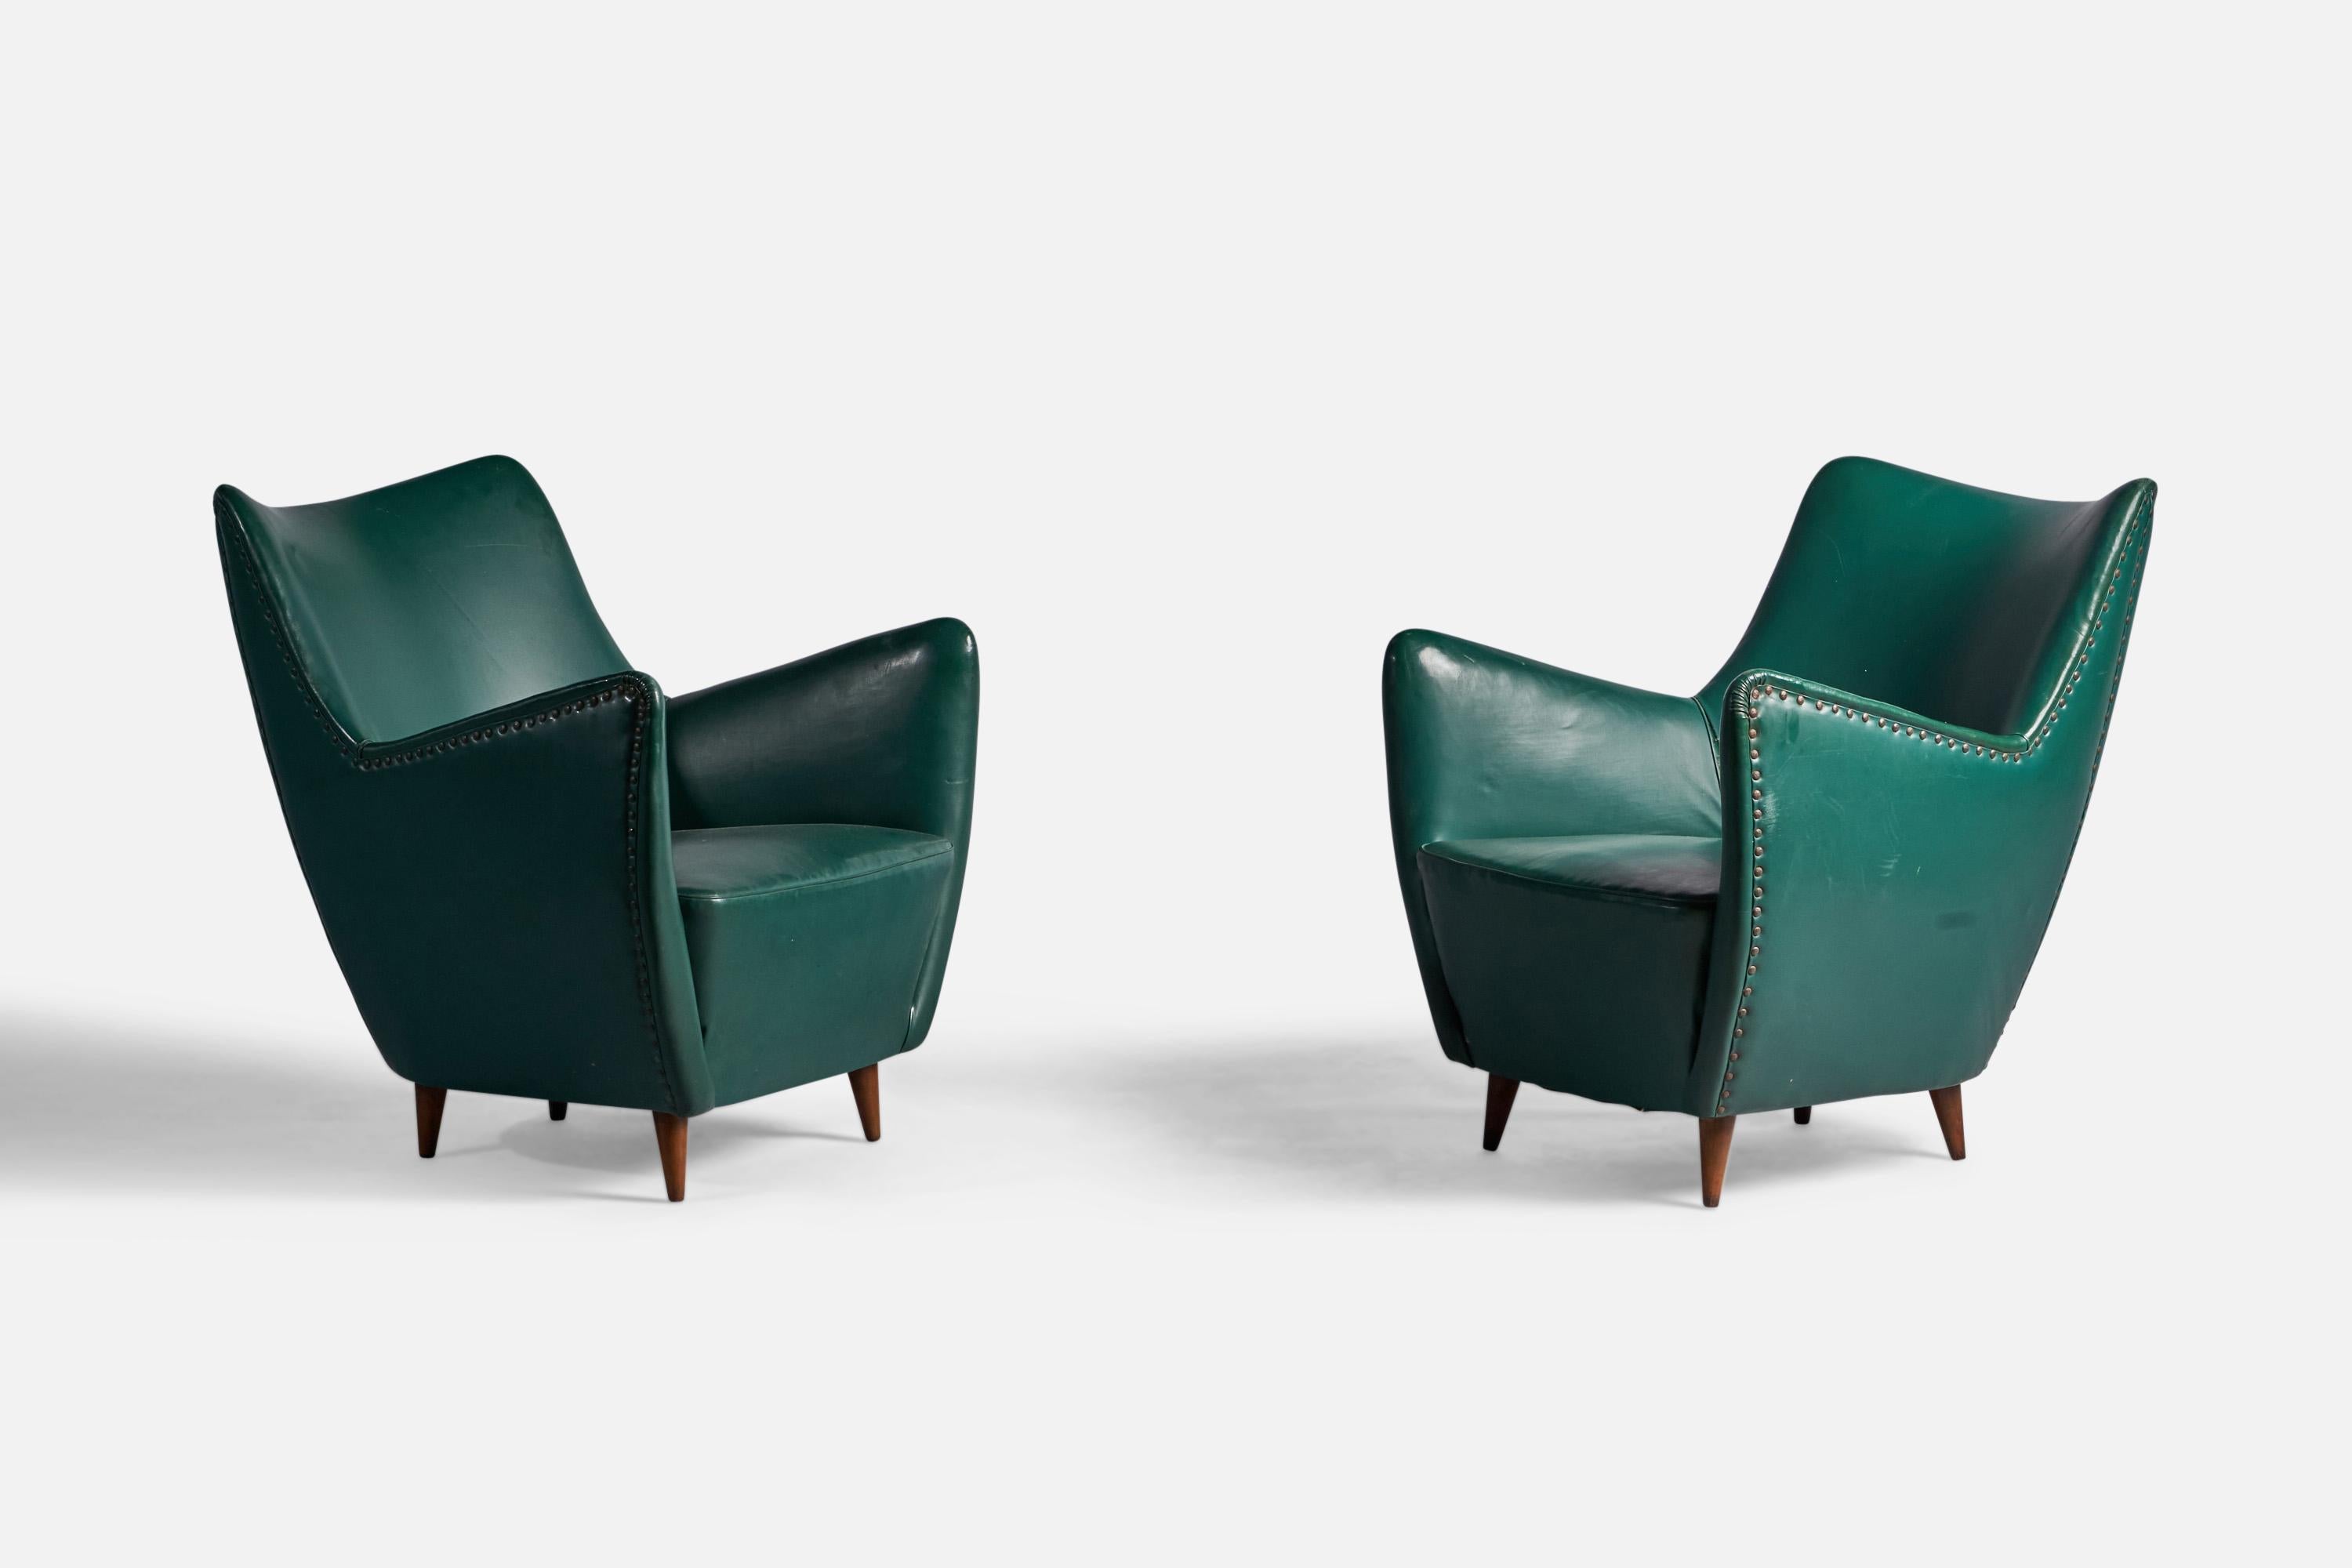 Paire de chaises longues en vinyle vert, bois et laiton, conçues par Guglielmo Veronesi et produites par ISA Bergamo, Italie, années 1950.

Hauteur d'assise : 16,5